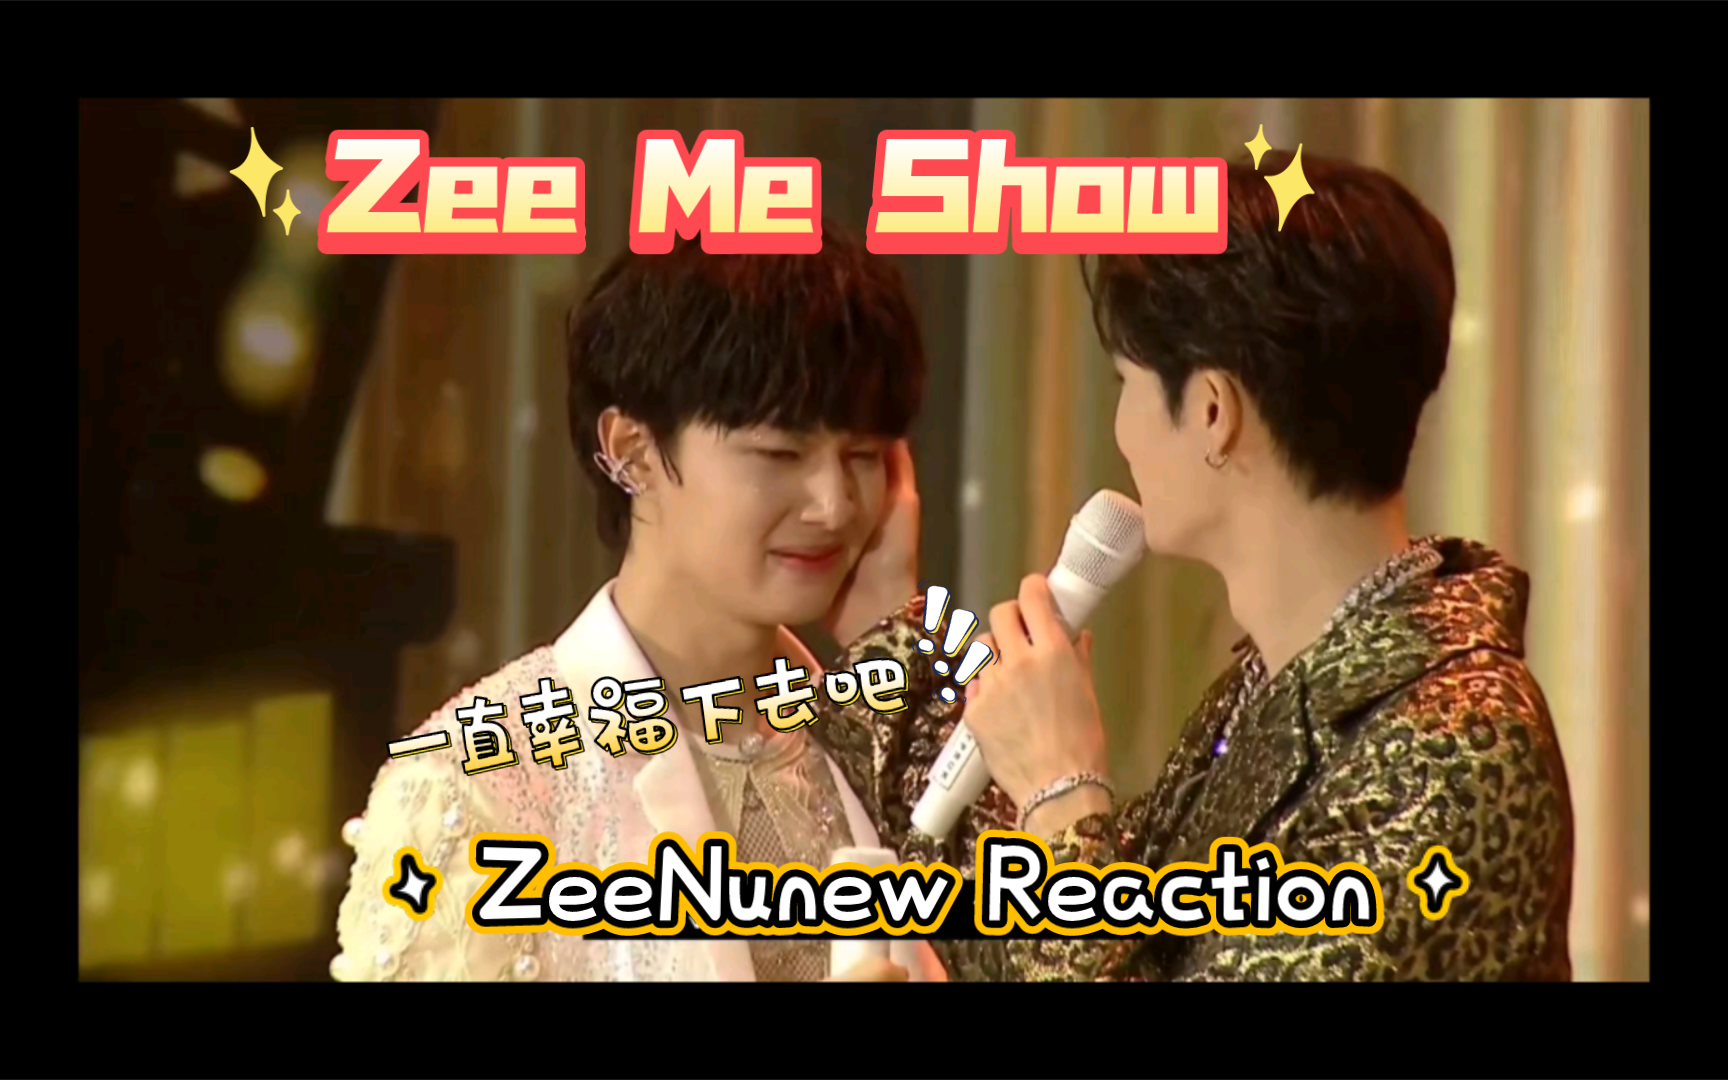 [ZeeNunew Reaction]Zee Me Show 第三期